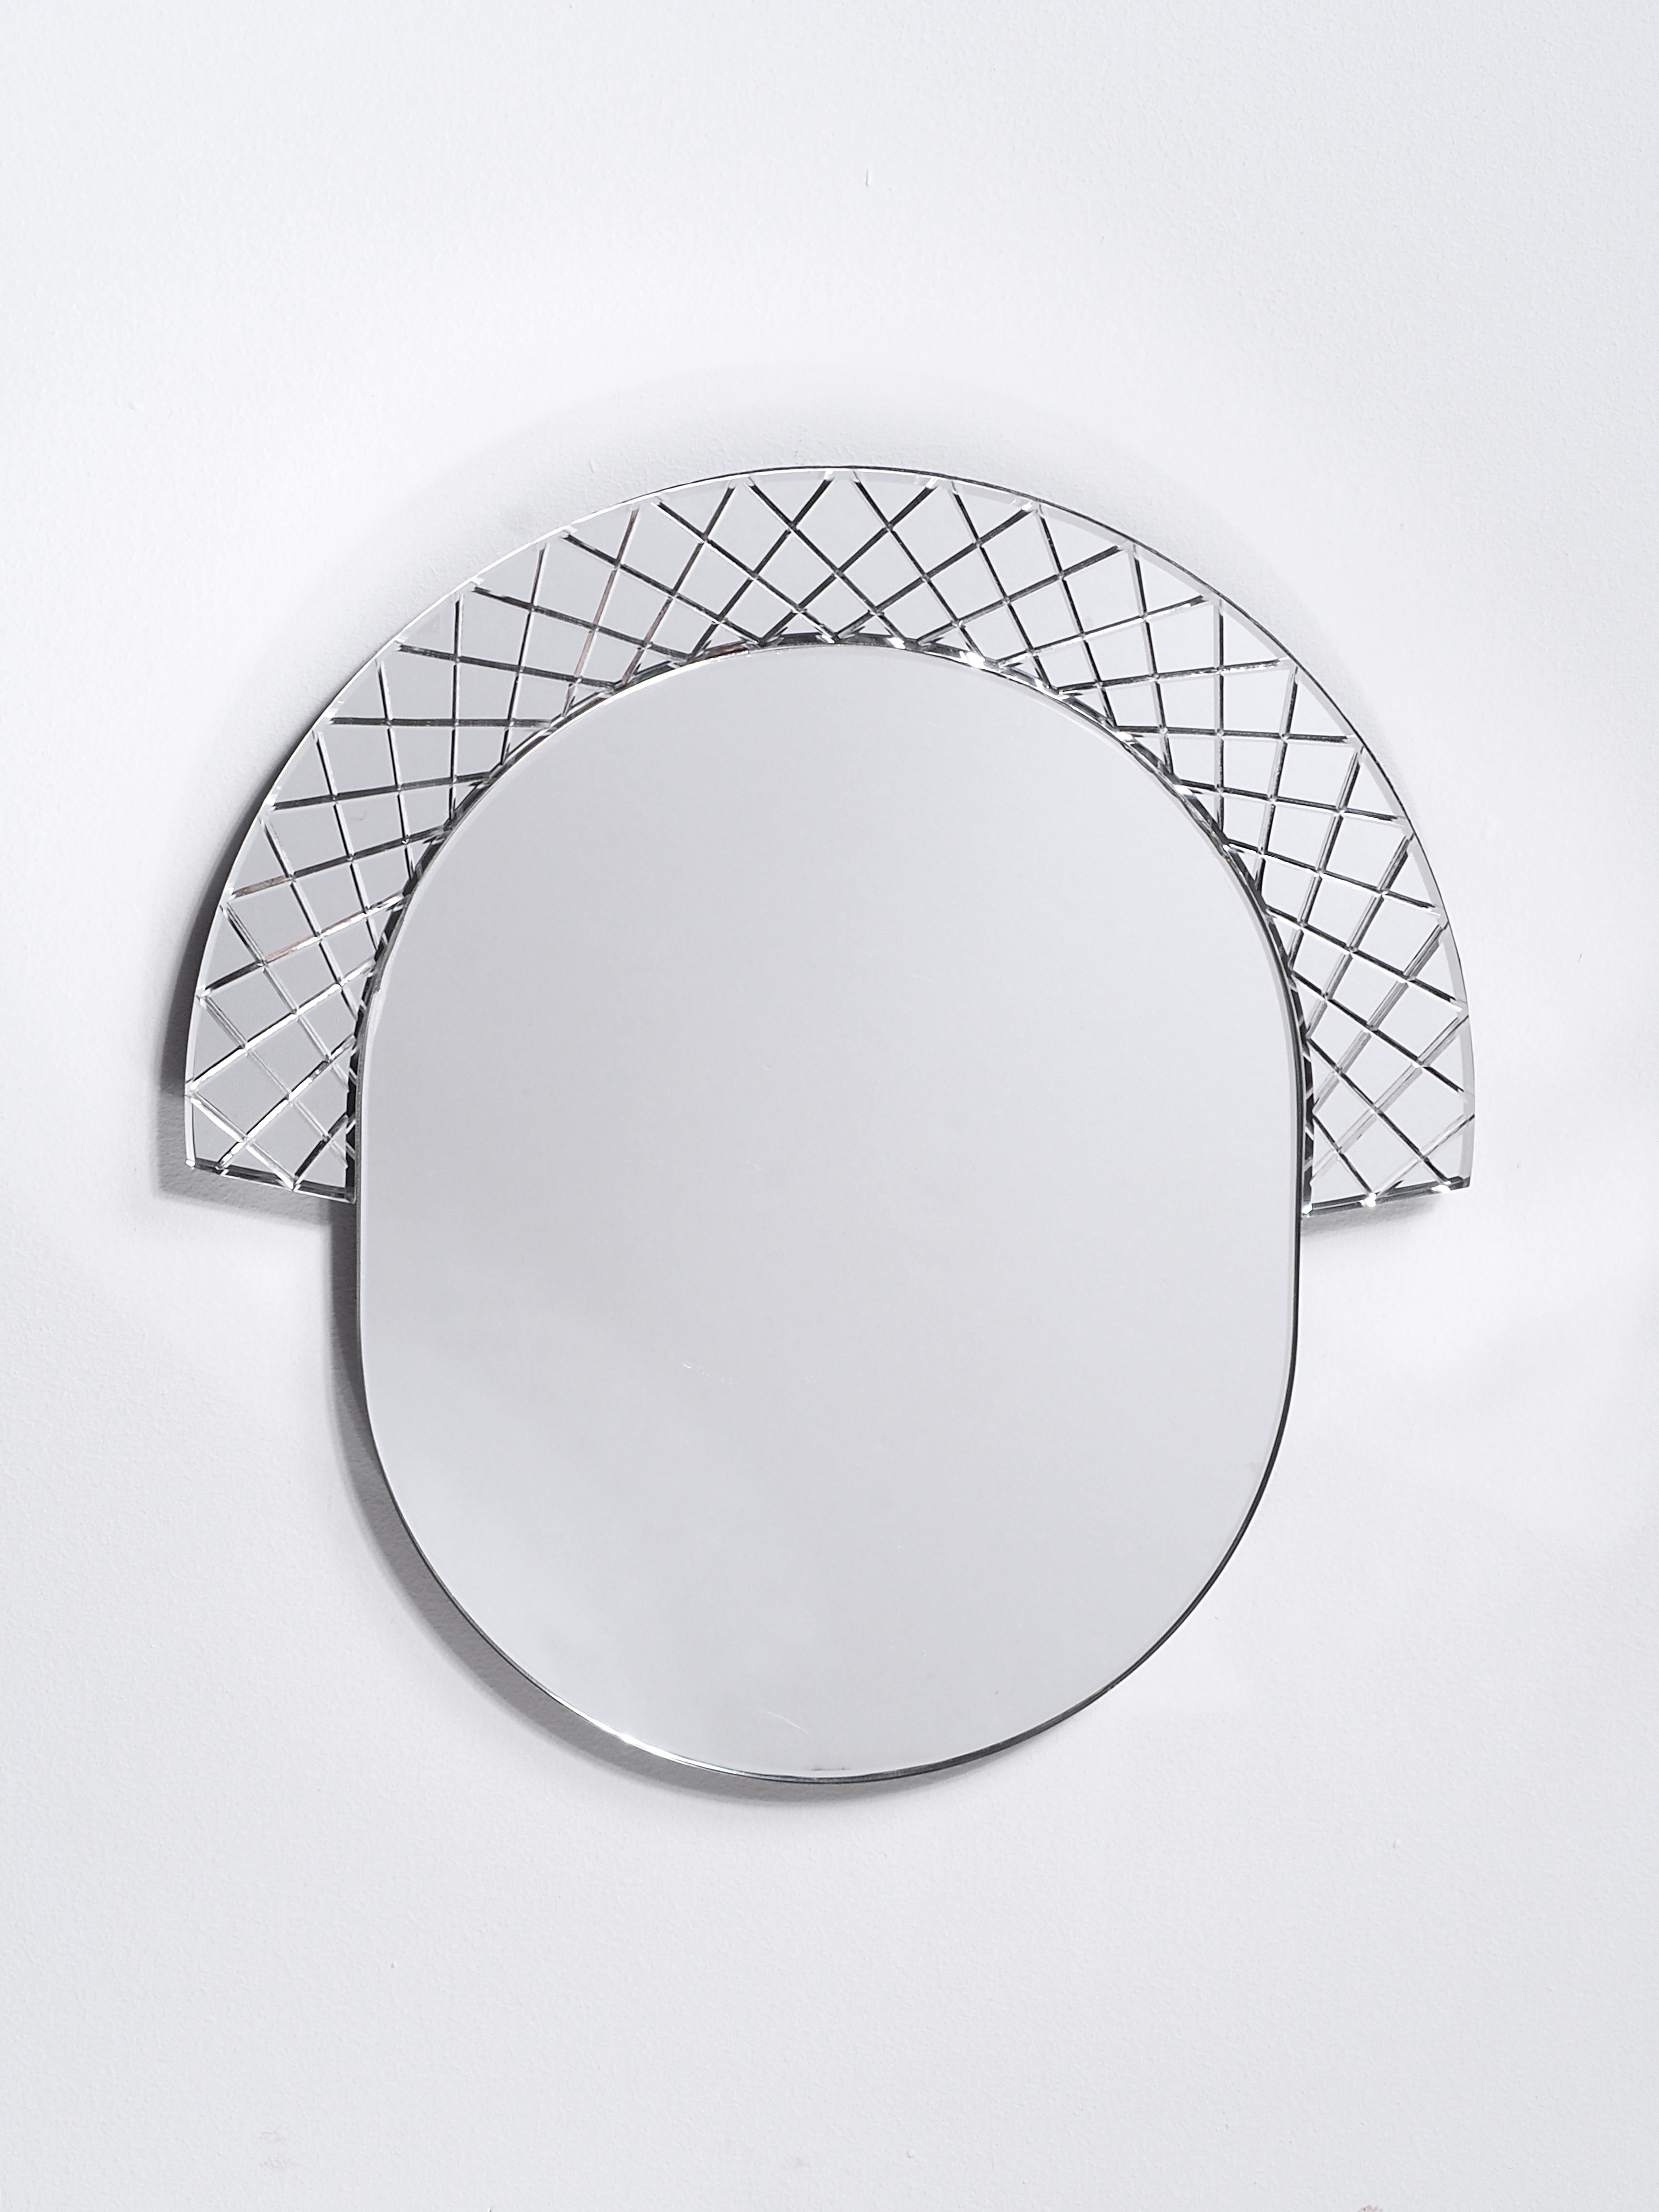 Grand miroir Murano Scena Elemento Uno de Nikolai Kotlarczyk.
Dimensions : D 3 x L 67 x H 65 cm. 
Matériaux : verre sculpté argenté, dos en bois gris foncé.
Également disponible dans d'autres tailles et motifs. 


Elemento est une série de miroirs